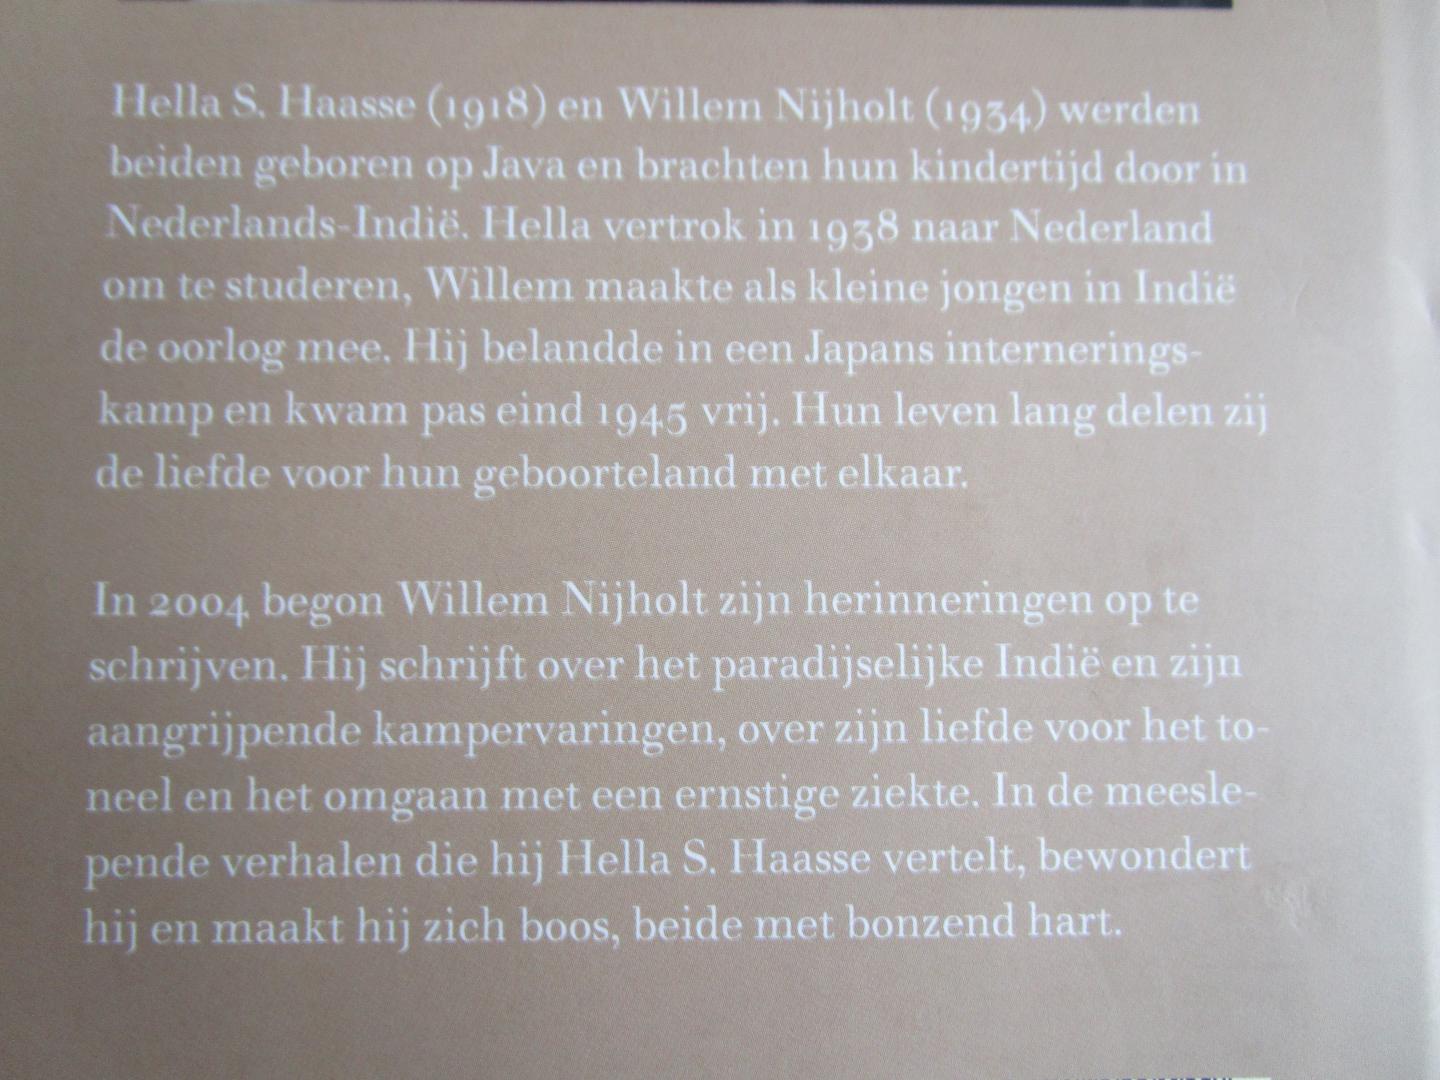 Nijholt, Willem - Met bonzend hart - Brieven aan Hella S. Haasse -